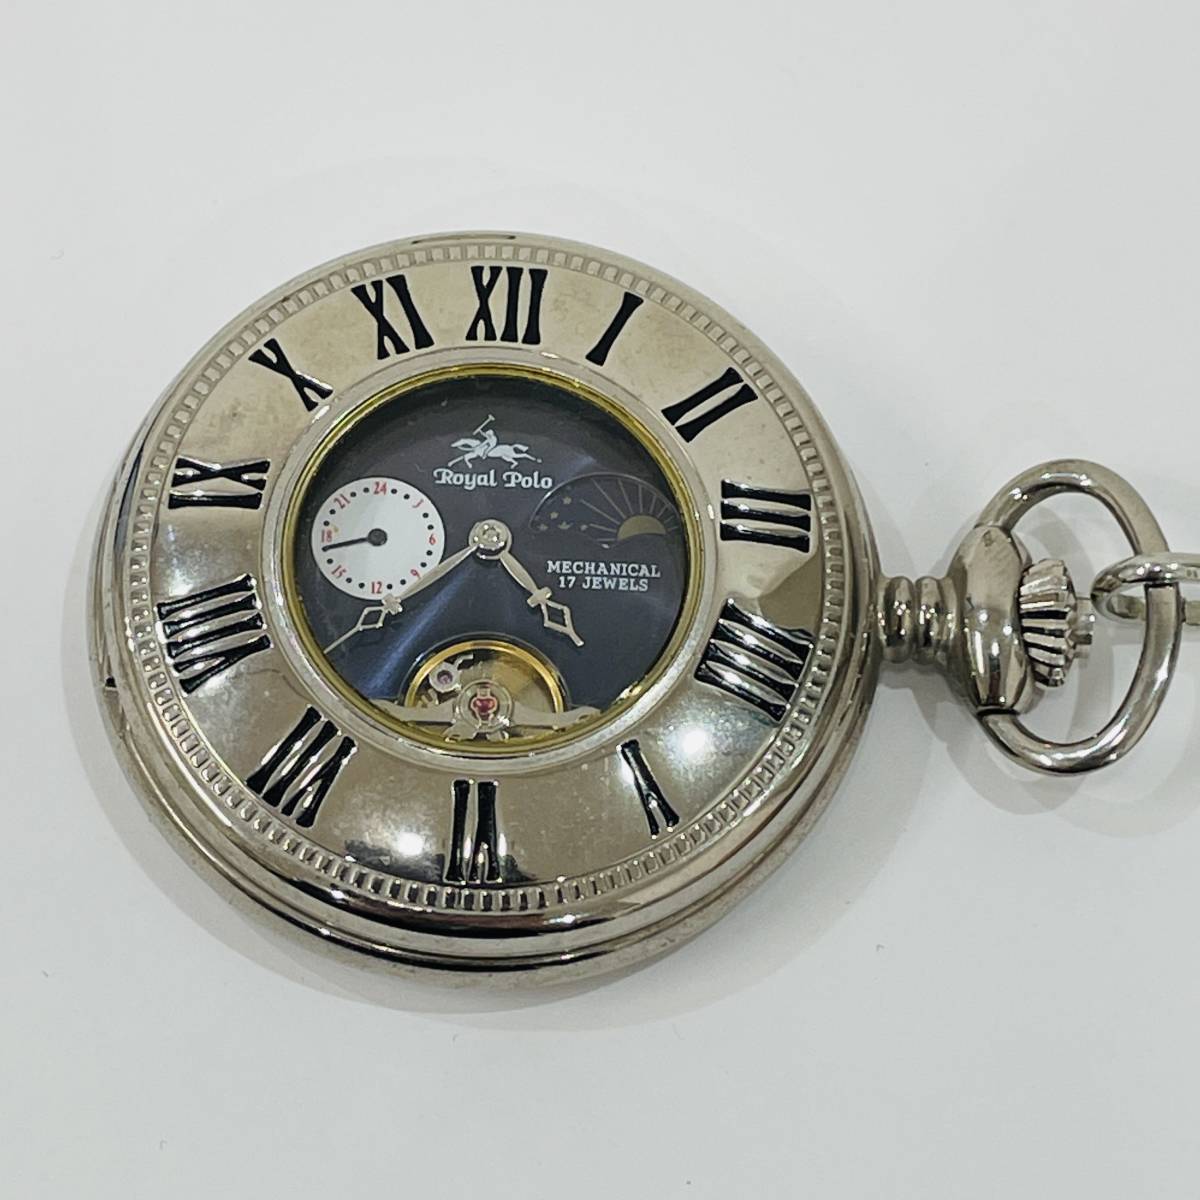 【Royal Polo/ロイヤルポロ】懐中時計 手巻き式 17JEWELS 稼働品 ケース付 1419